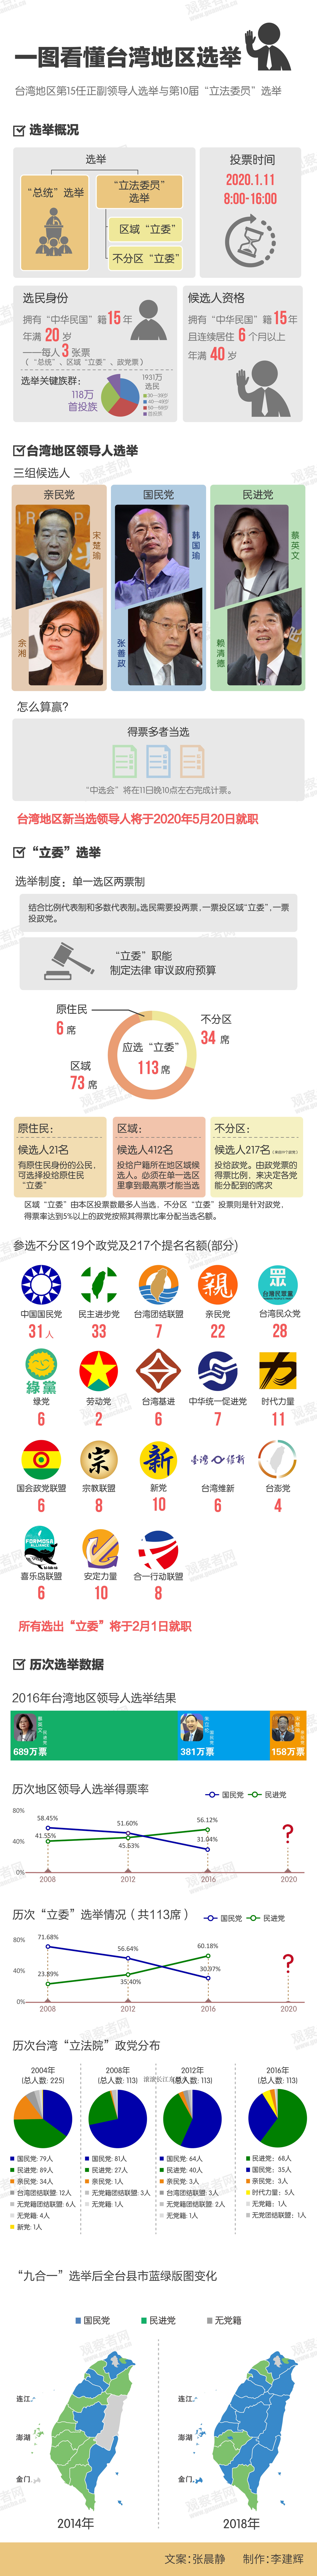 一图看懂2020台湾地区选举